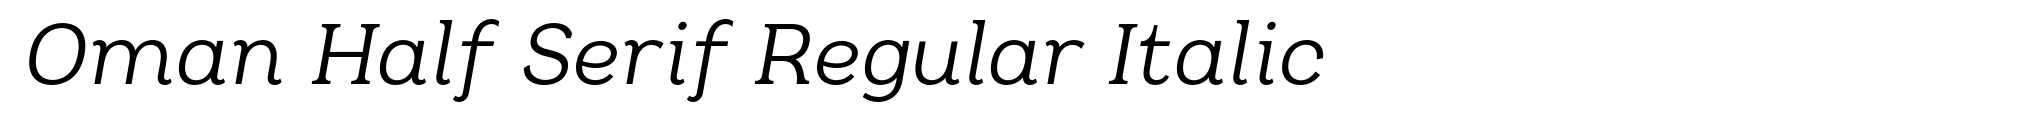 Oman Half Serif Regular Italic image